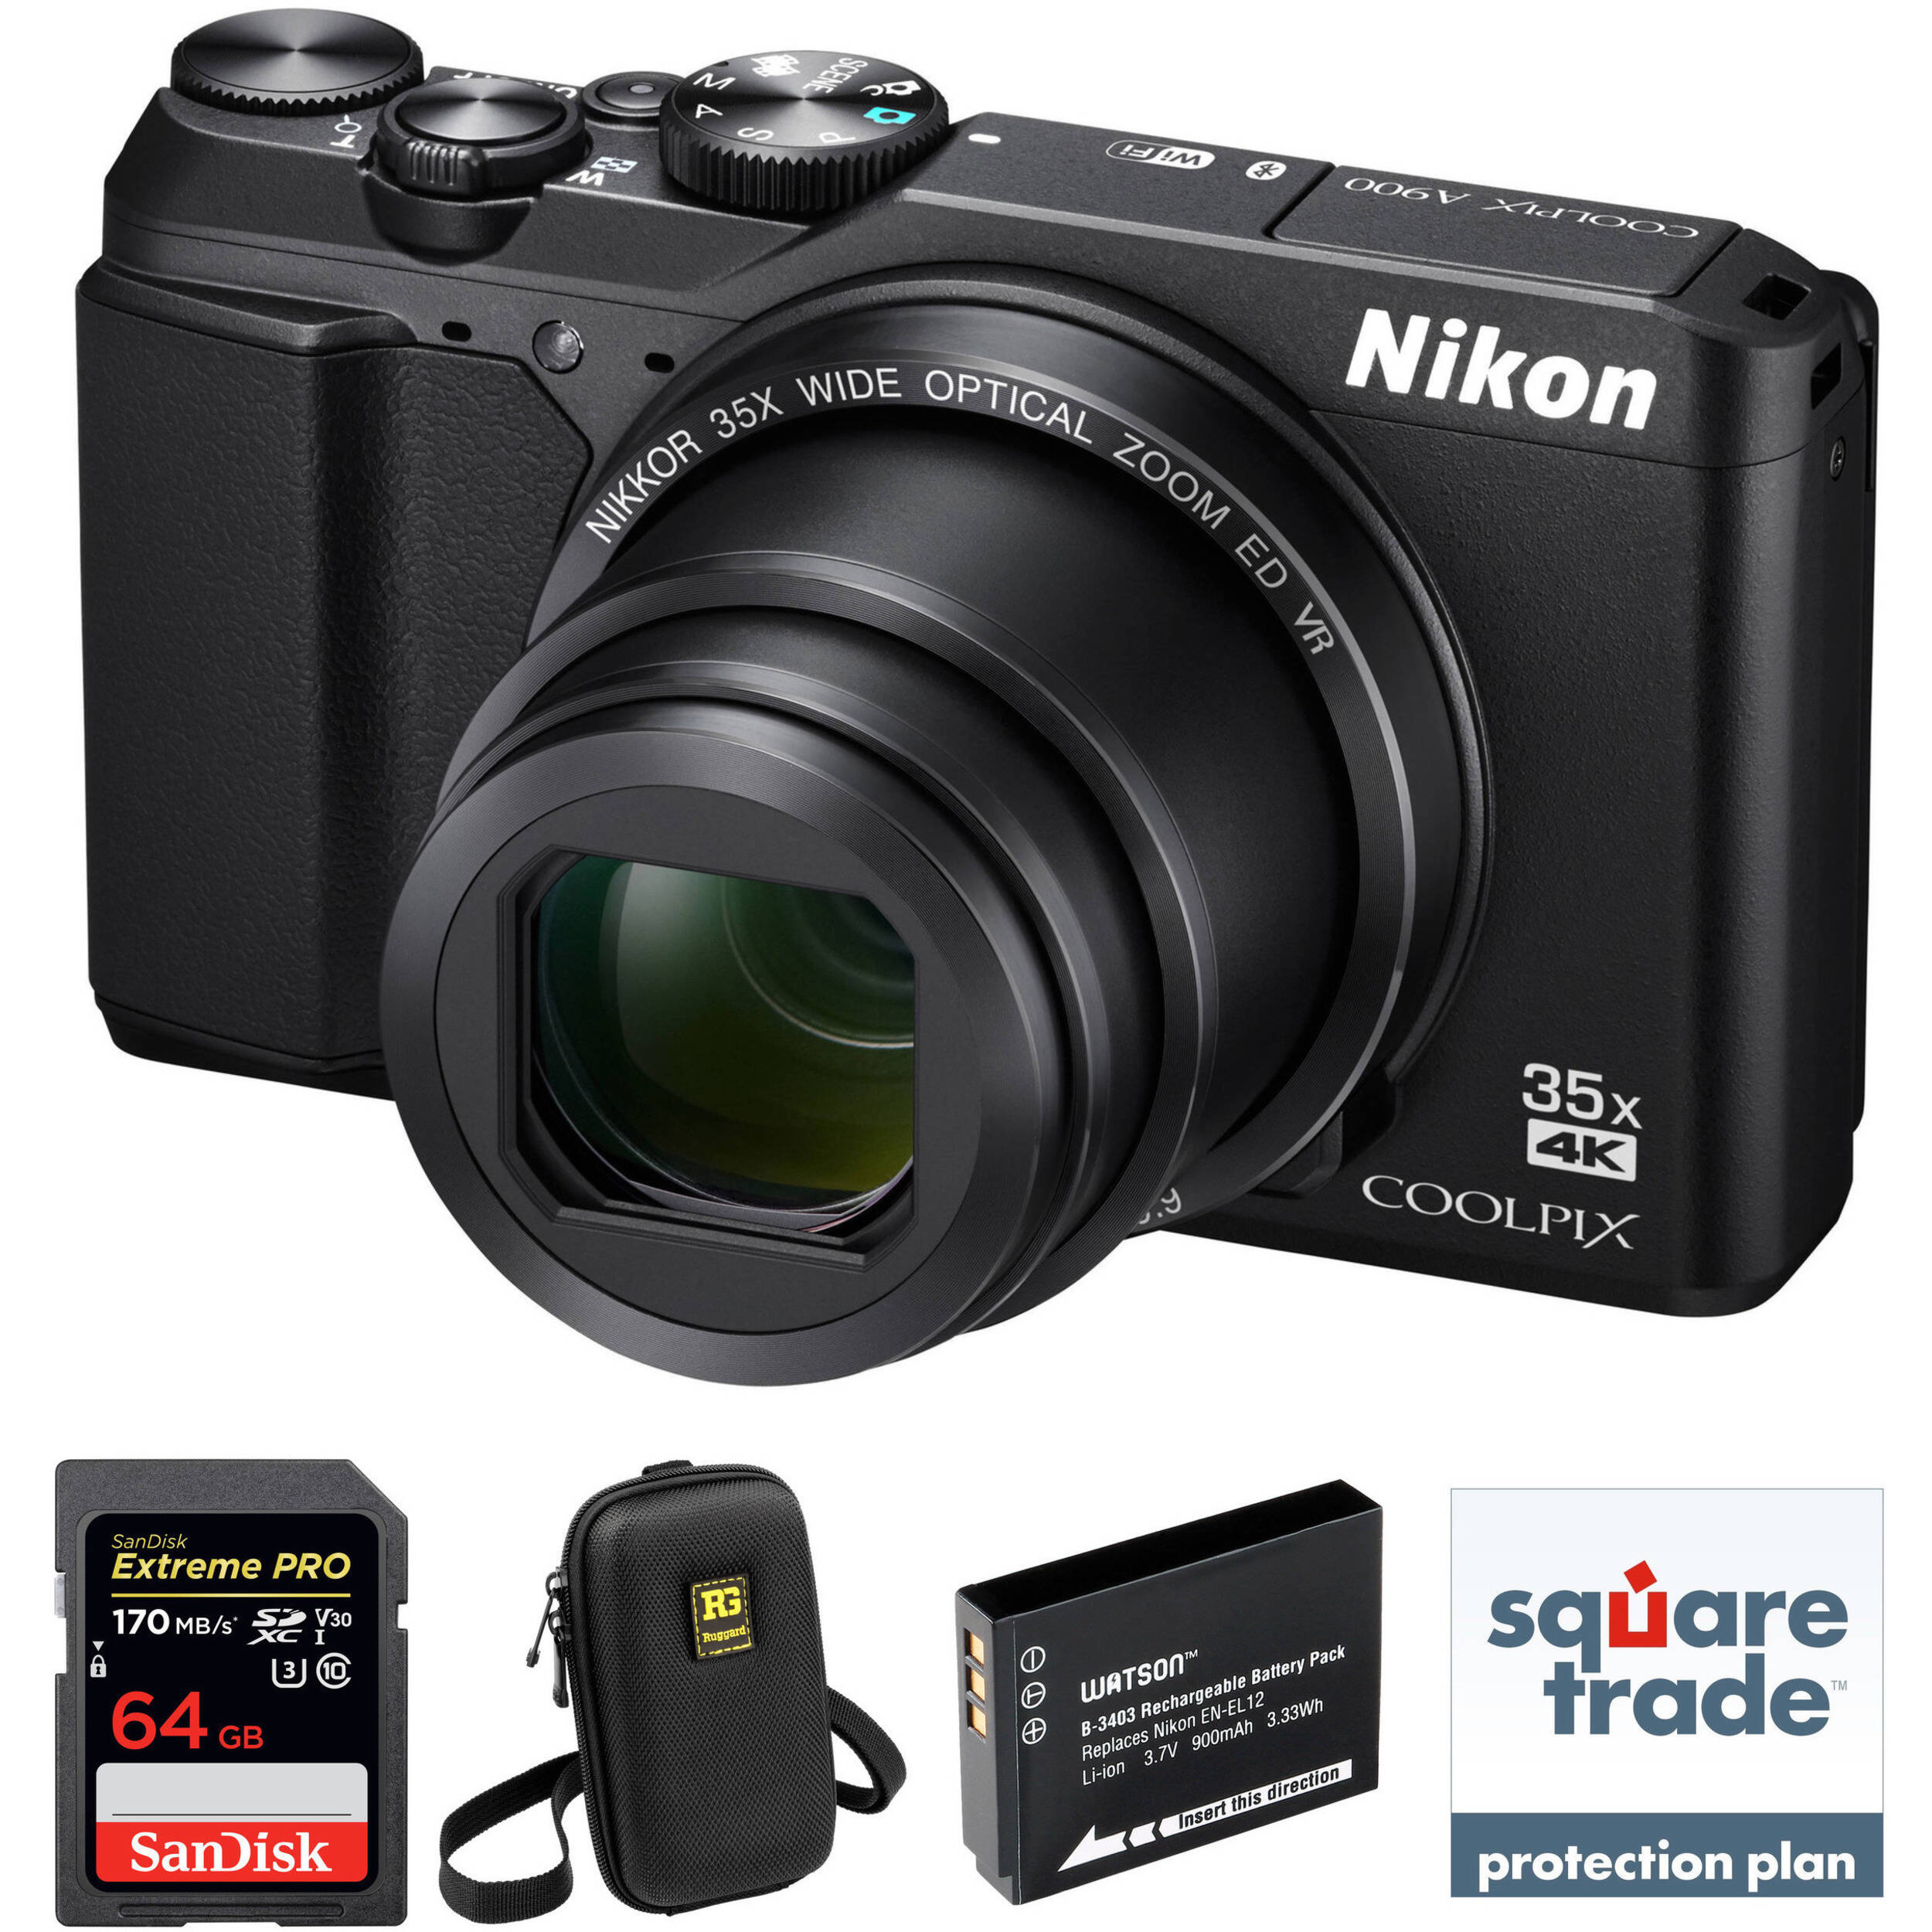 Nikon A900 Sale, 55% OFF | www.hcb.cat